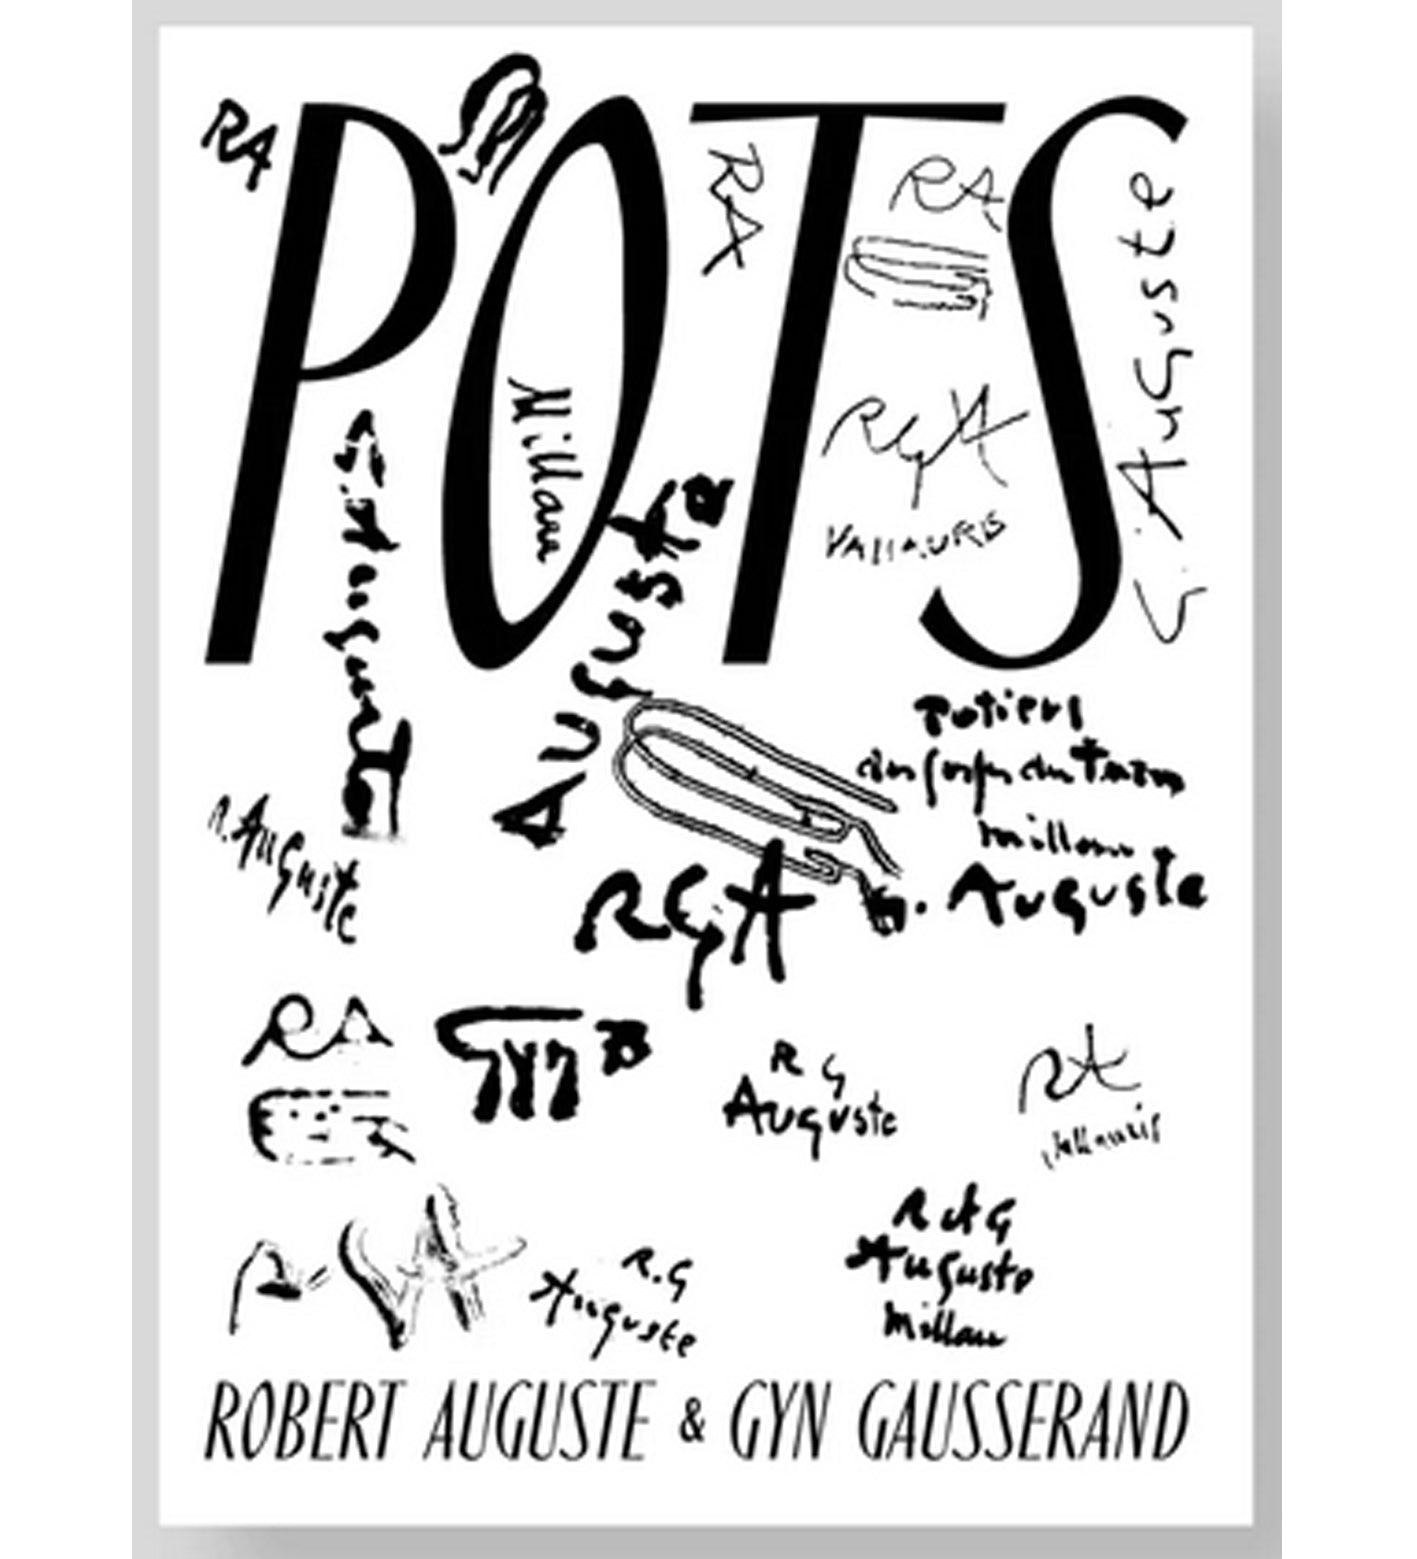 Robert Auguste & Gyn Gausserand: Pots